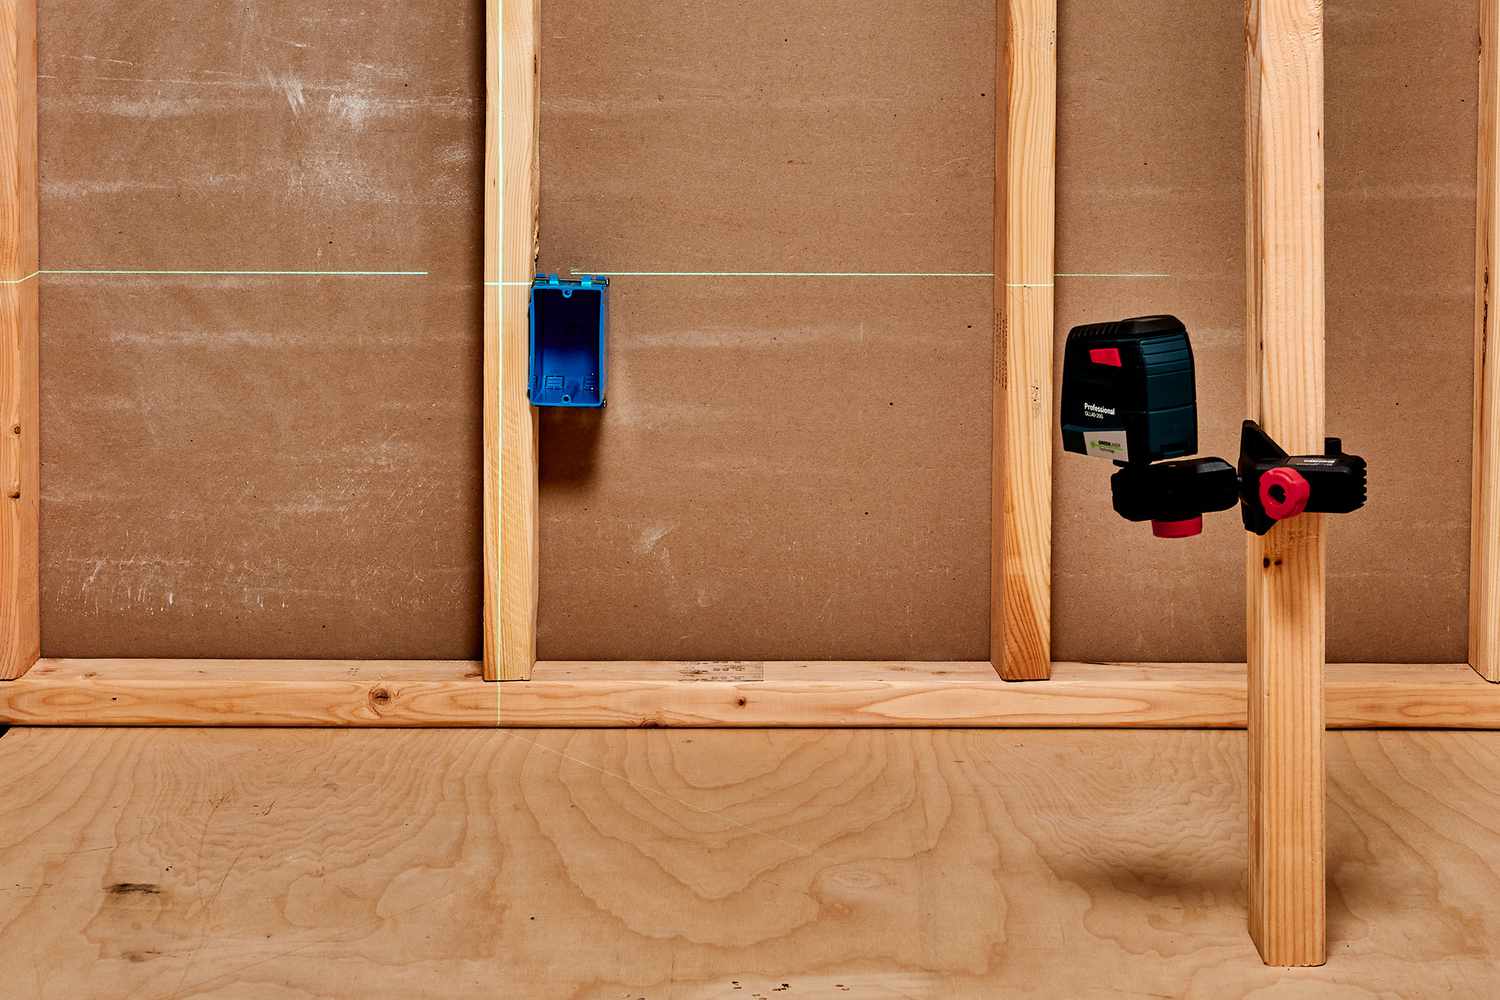 Laser-Nivelliergerät zur Bestimmung der Höhe von Wandsteckdosen oder Schaltkästen über Holzbalken